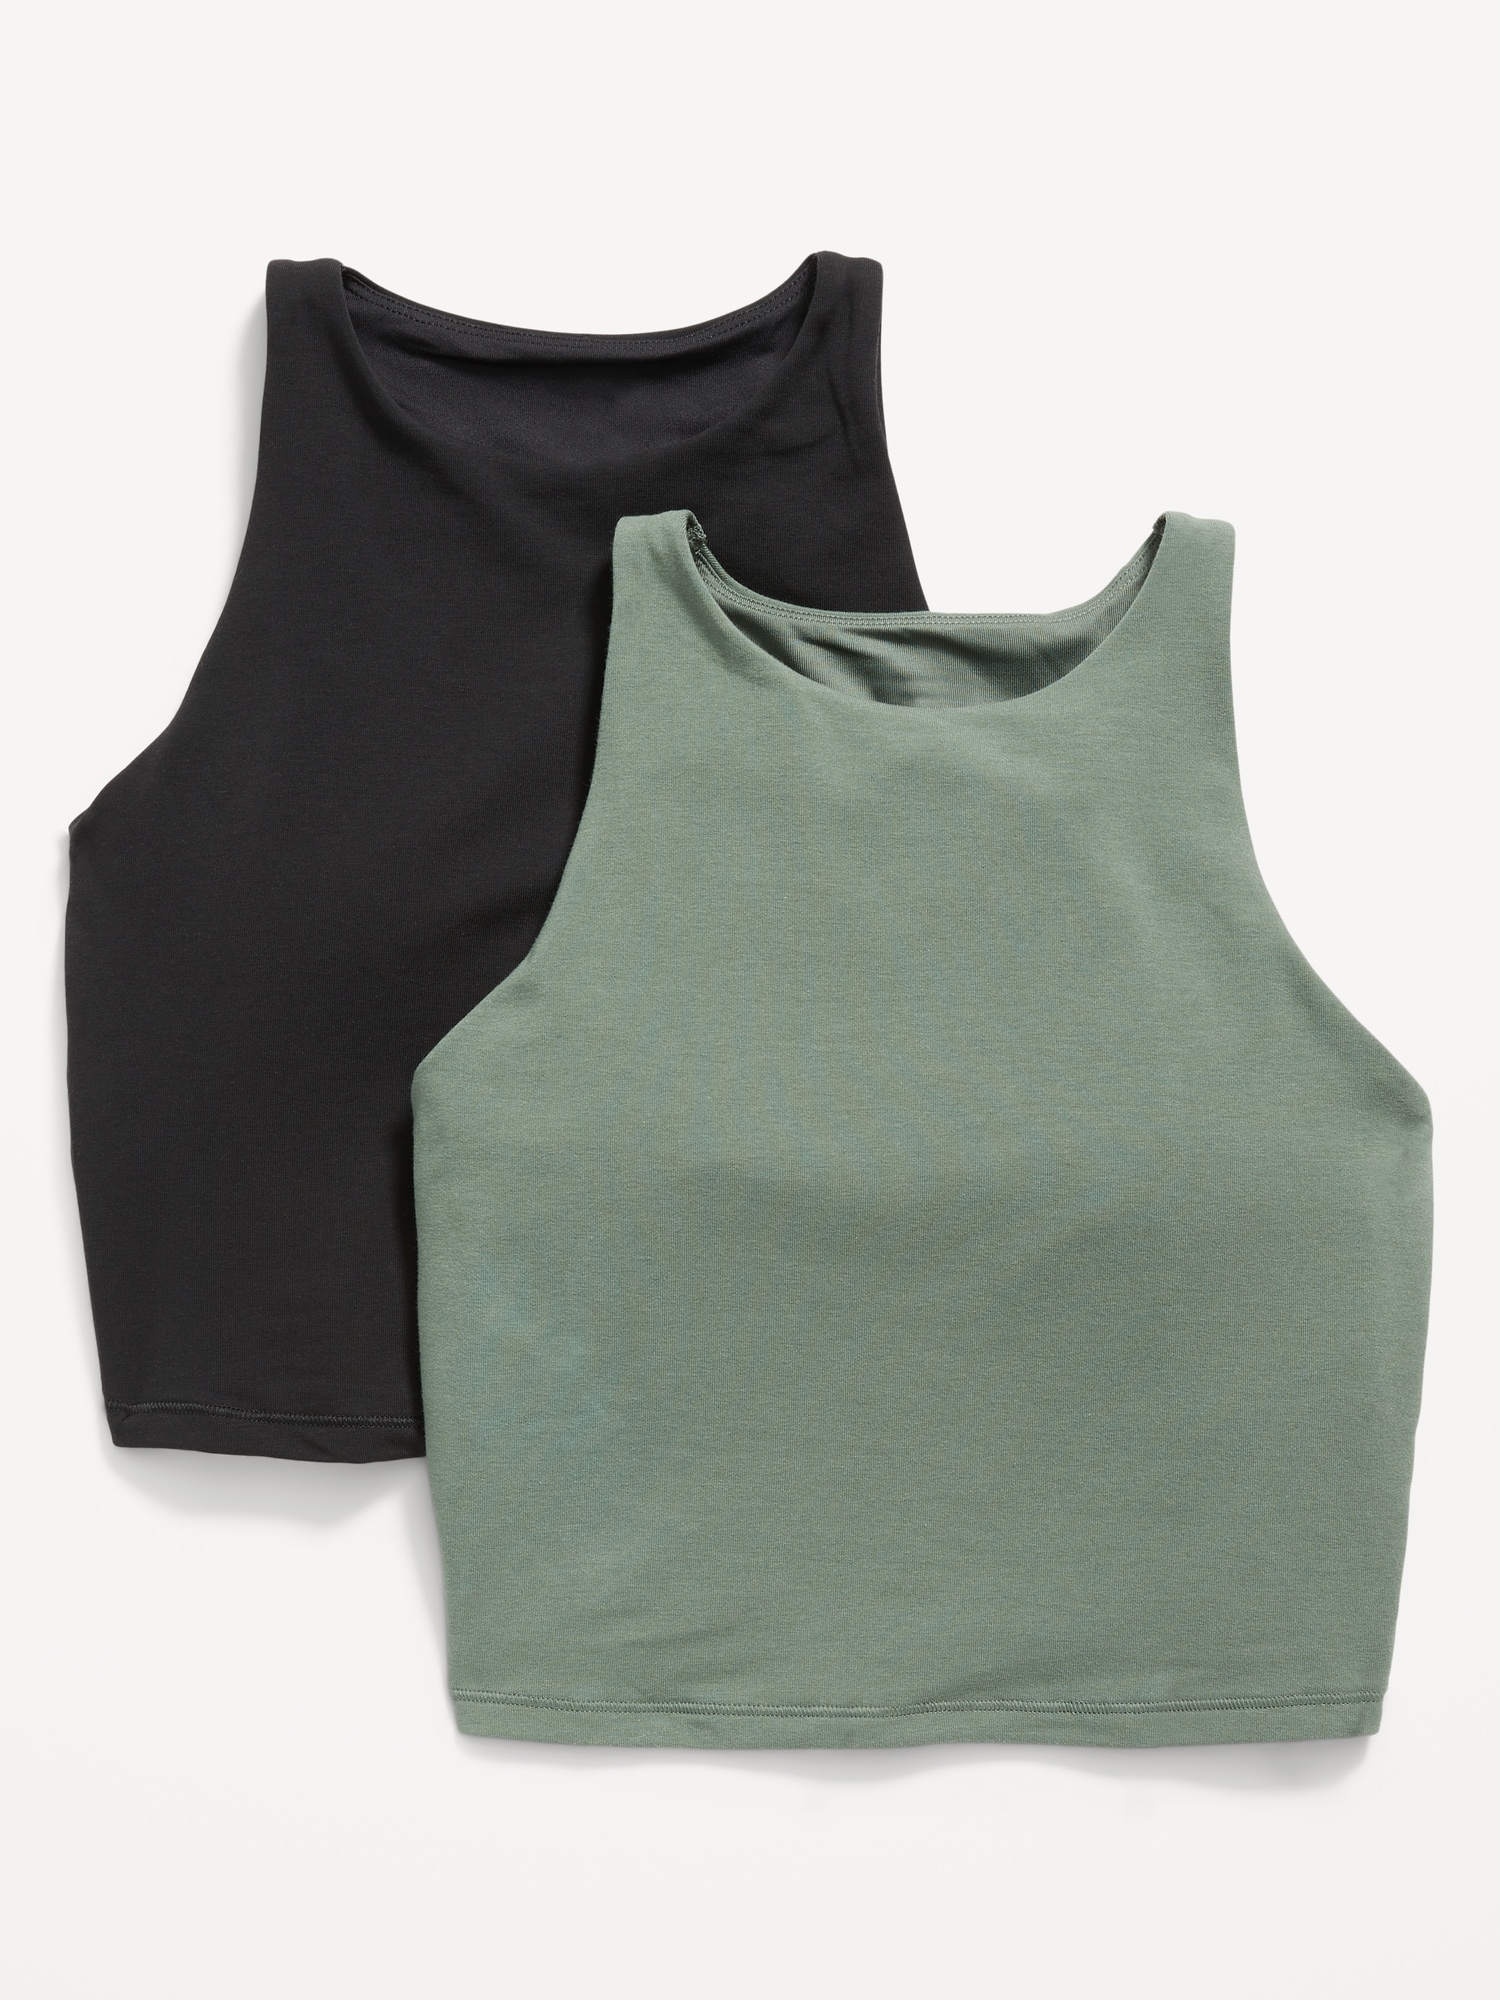 2-pack Shelf-bra Sports Tops - Light khaki green/white - Ladies